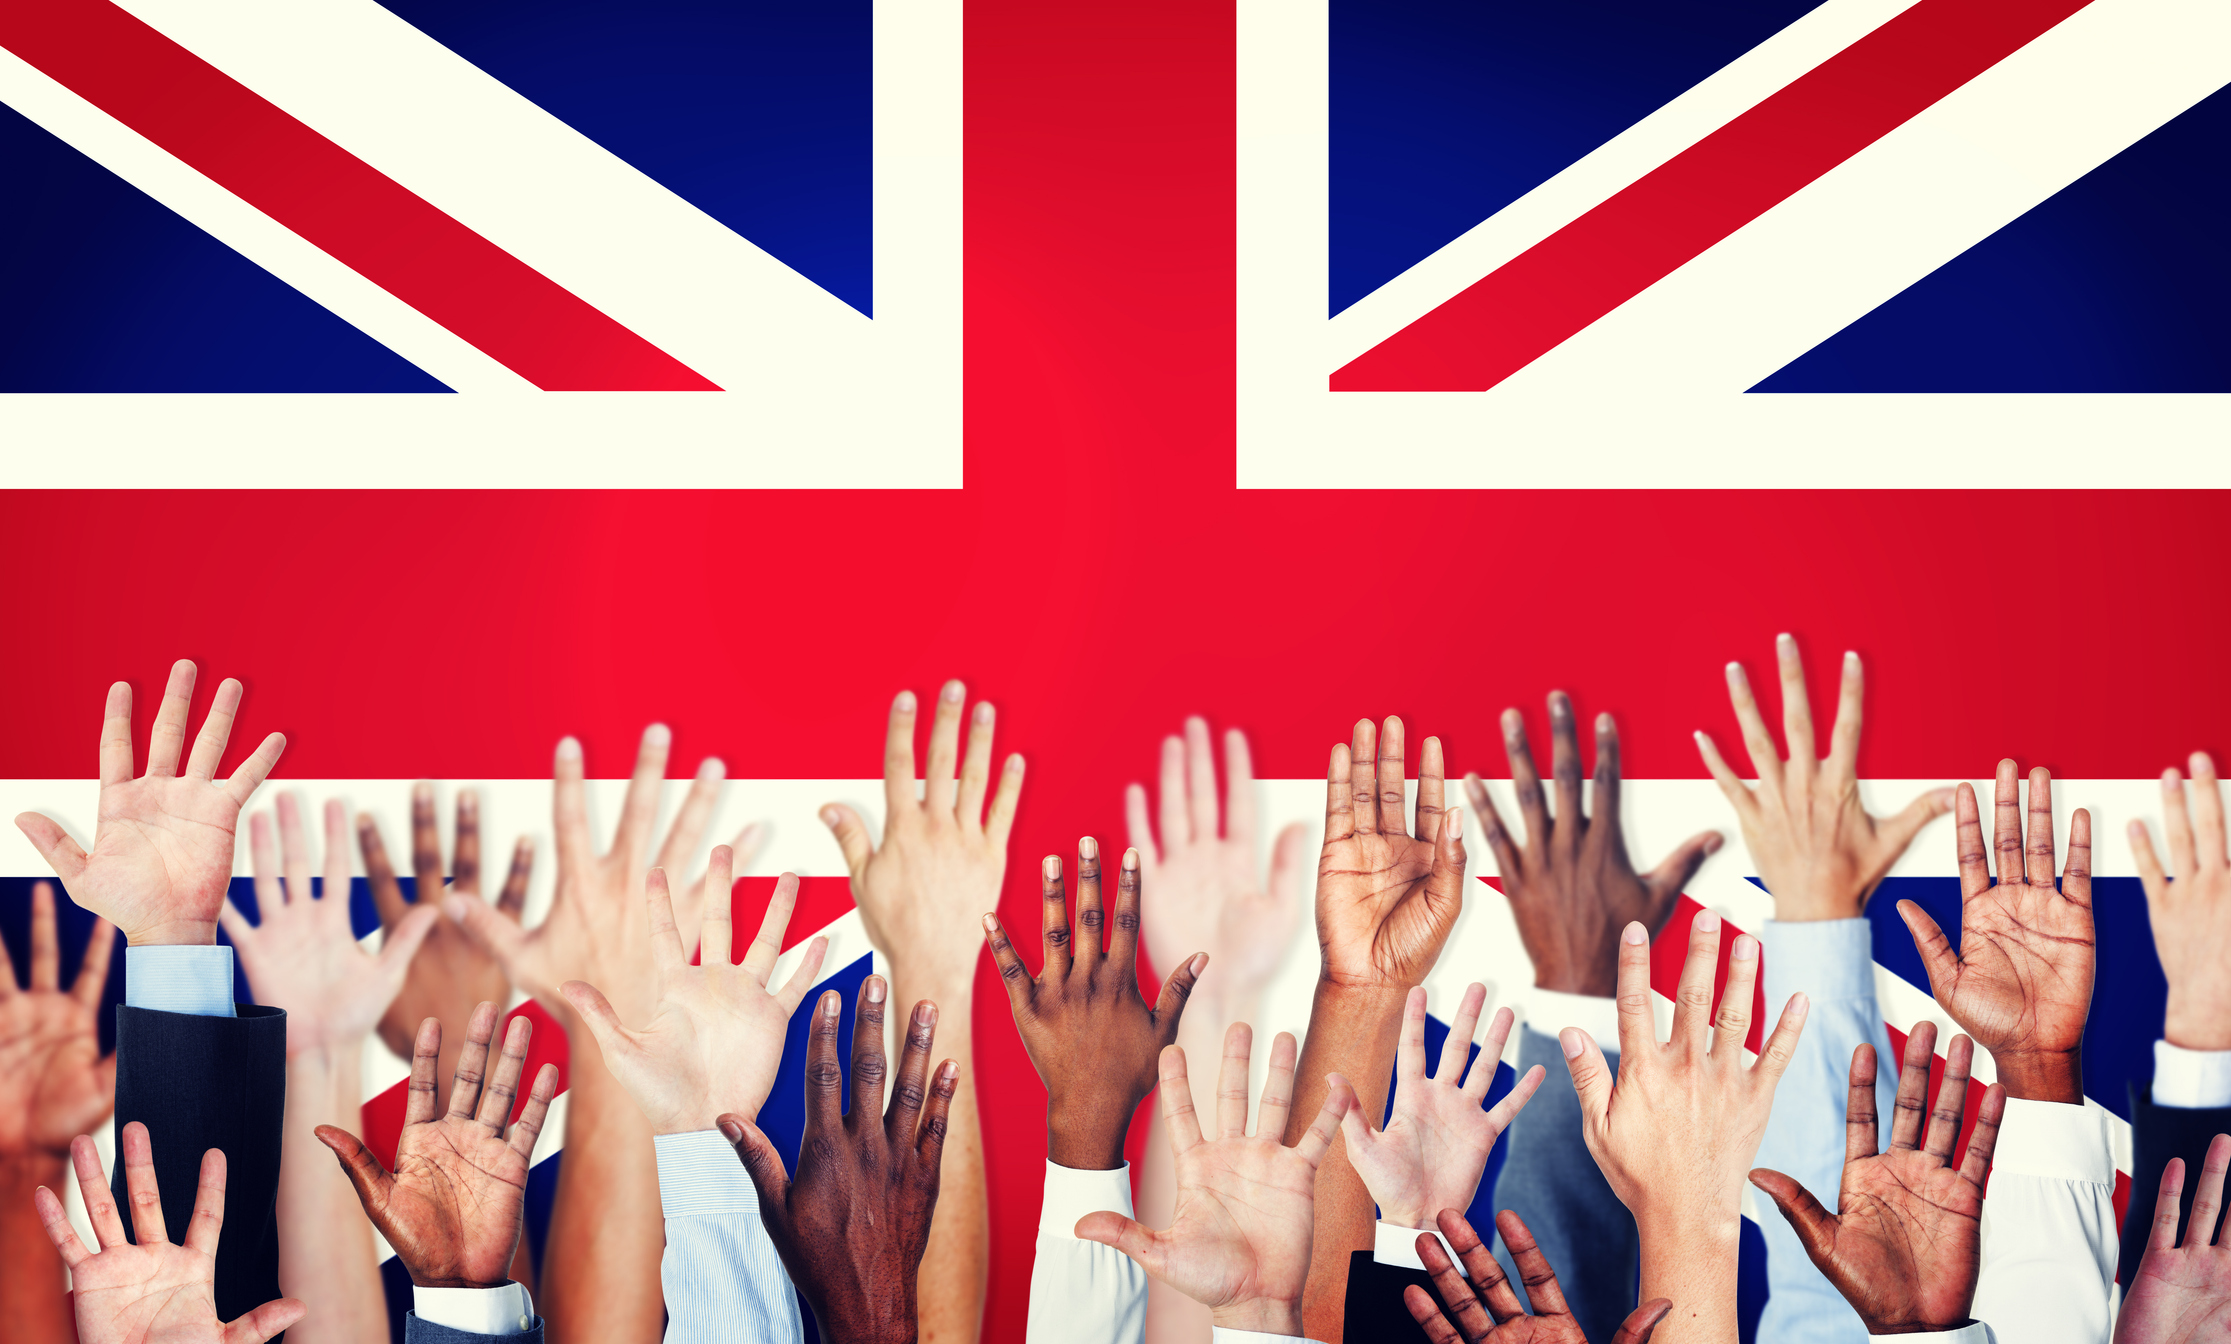 Gruppe von Menschen verschiedener Ethnien mit erhobenen Armen und Flagge des Vereinigten Königreichs